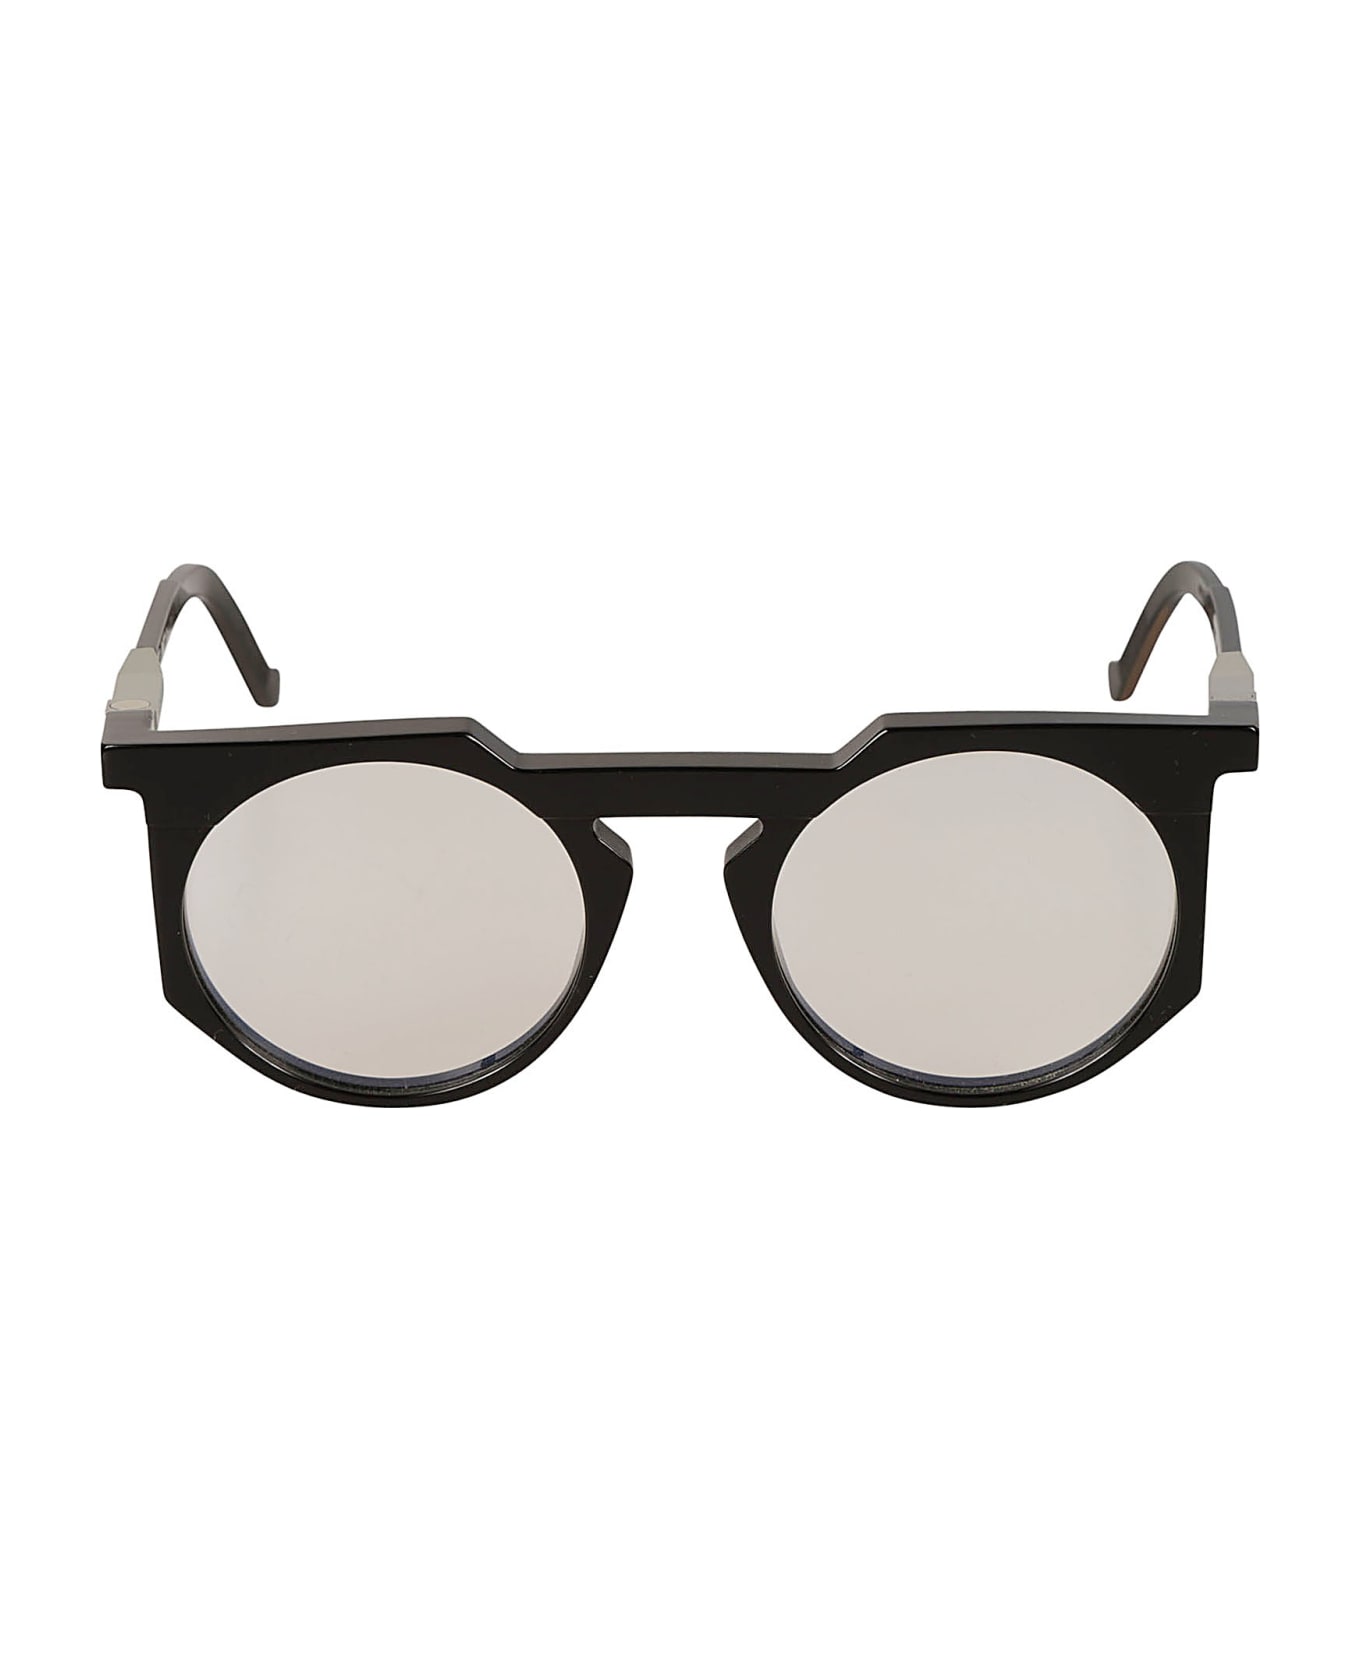 VAVA Clear Lens Round Frame Glasses Glasses - Black アイウェア